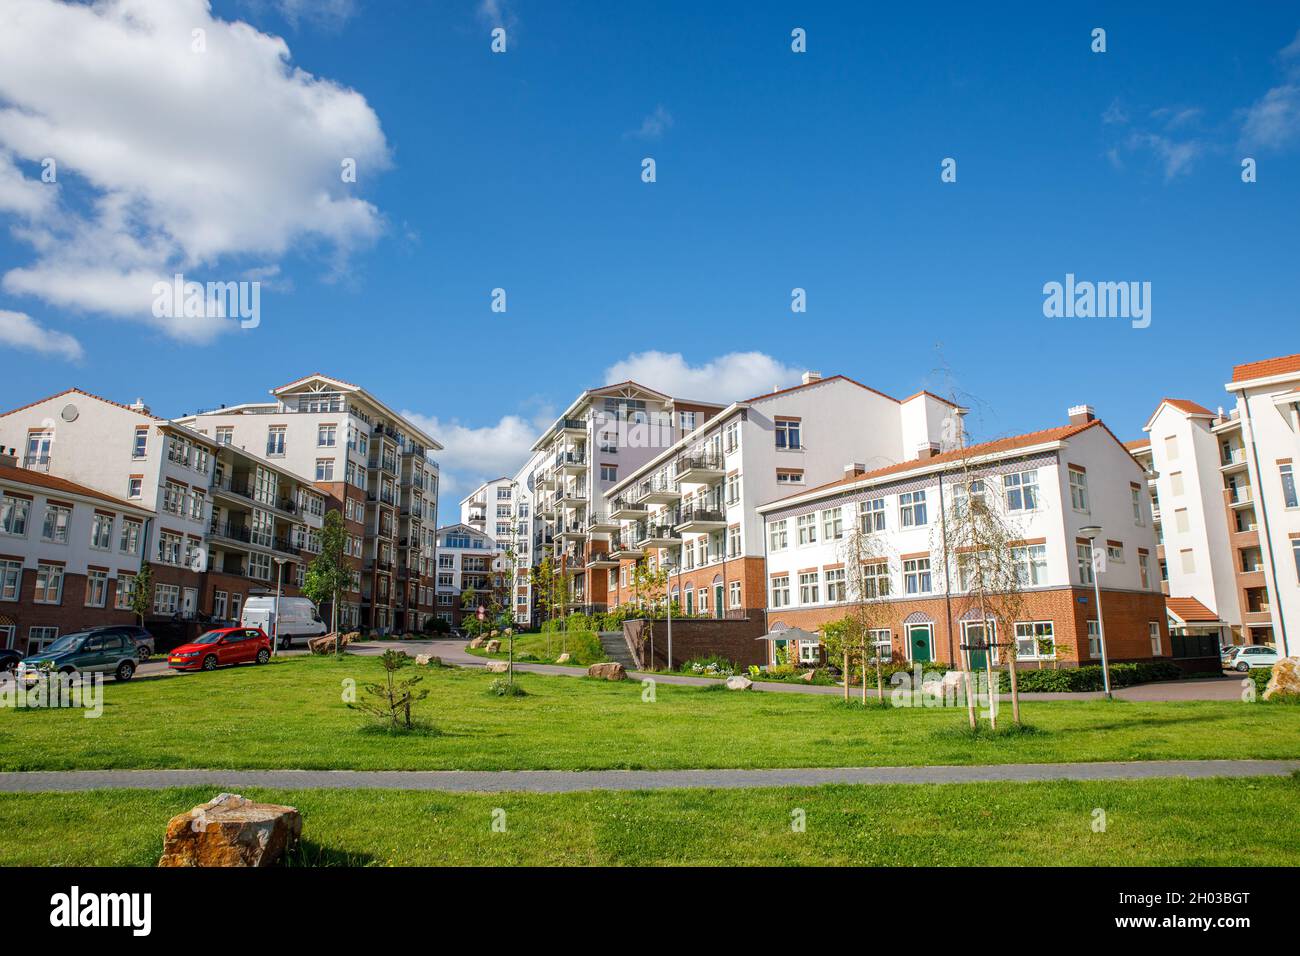 Complesso di appartamenti 'de Bloem' nel villaggio sud-olandese di Rijnsburg nei Paesi Bassi. In una giornata blu nuvolosa d'estate. Costruisci a forma di A. Foto Stock